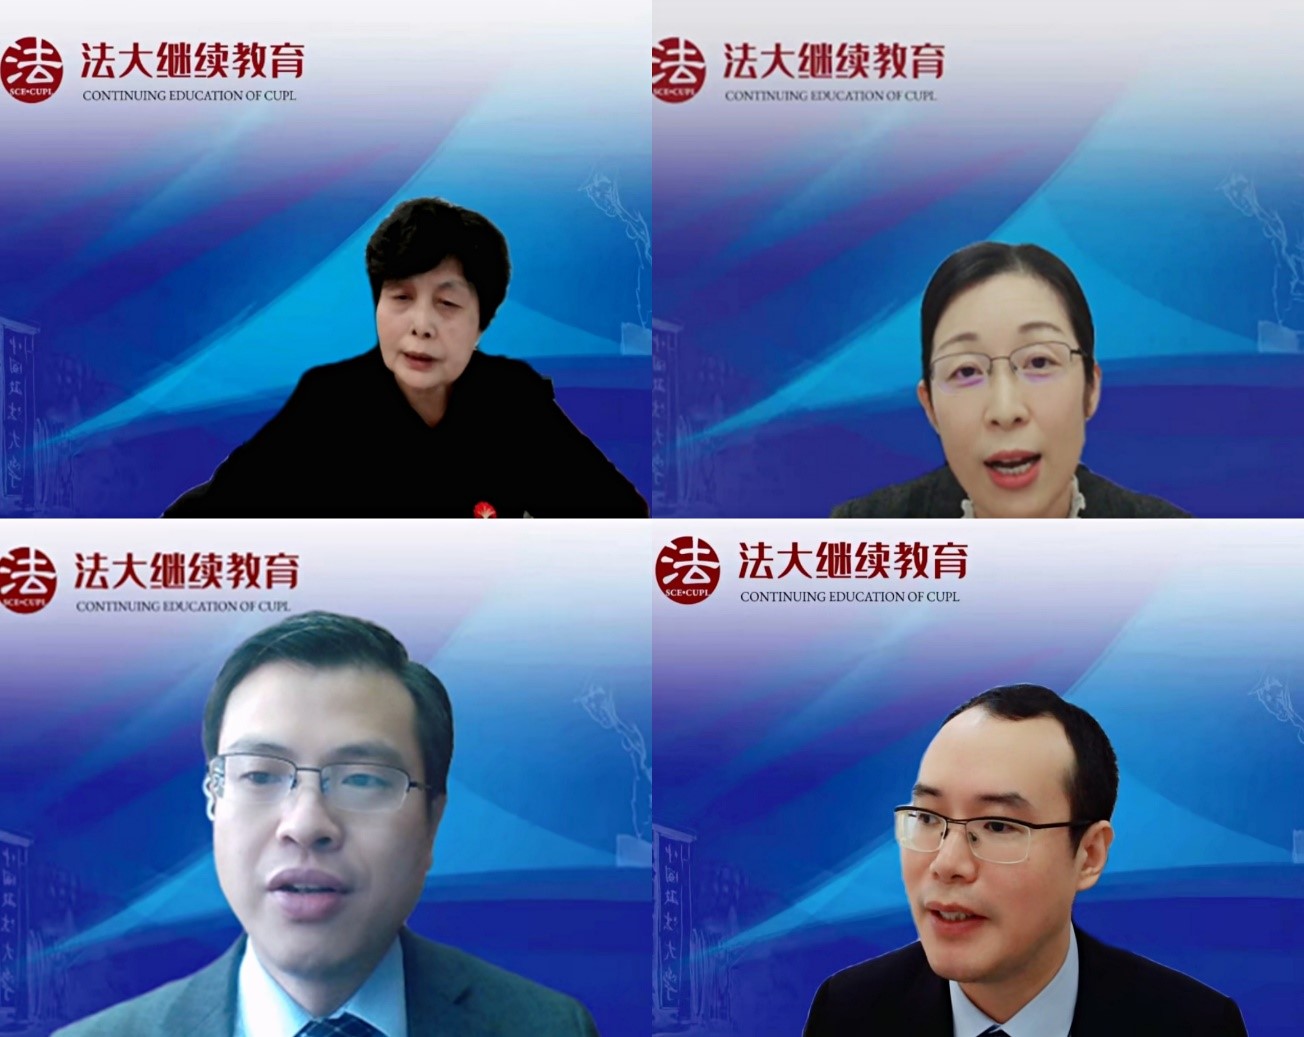 中国政法大学与北京仲裁委员会/北京国际仲裁中心第二期仲裁员培训班成功举办